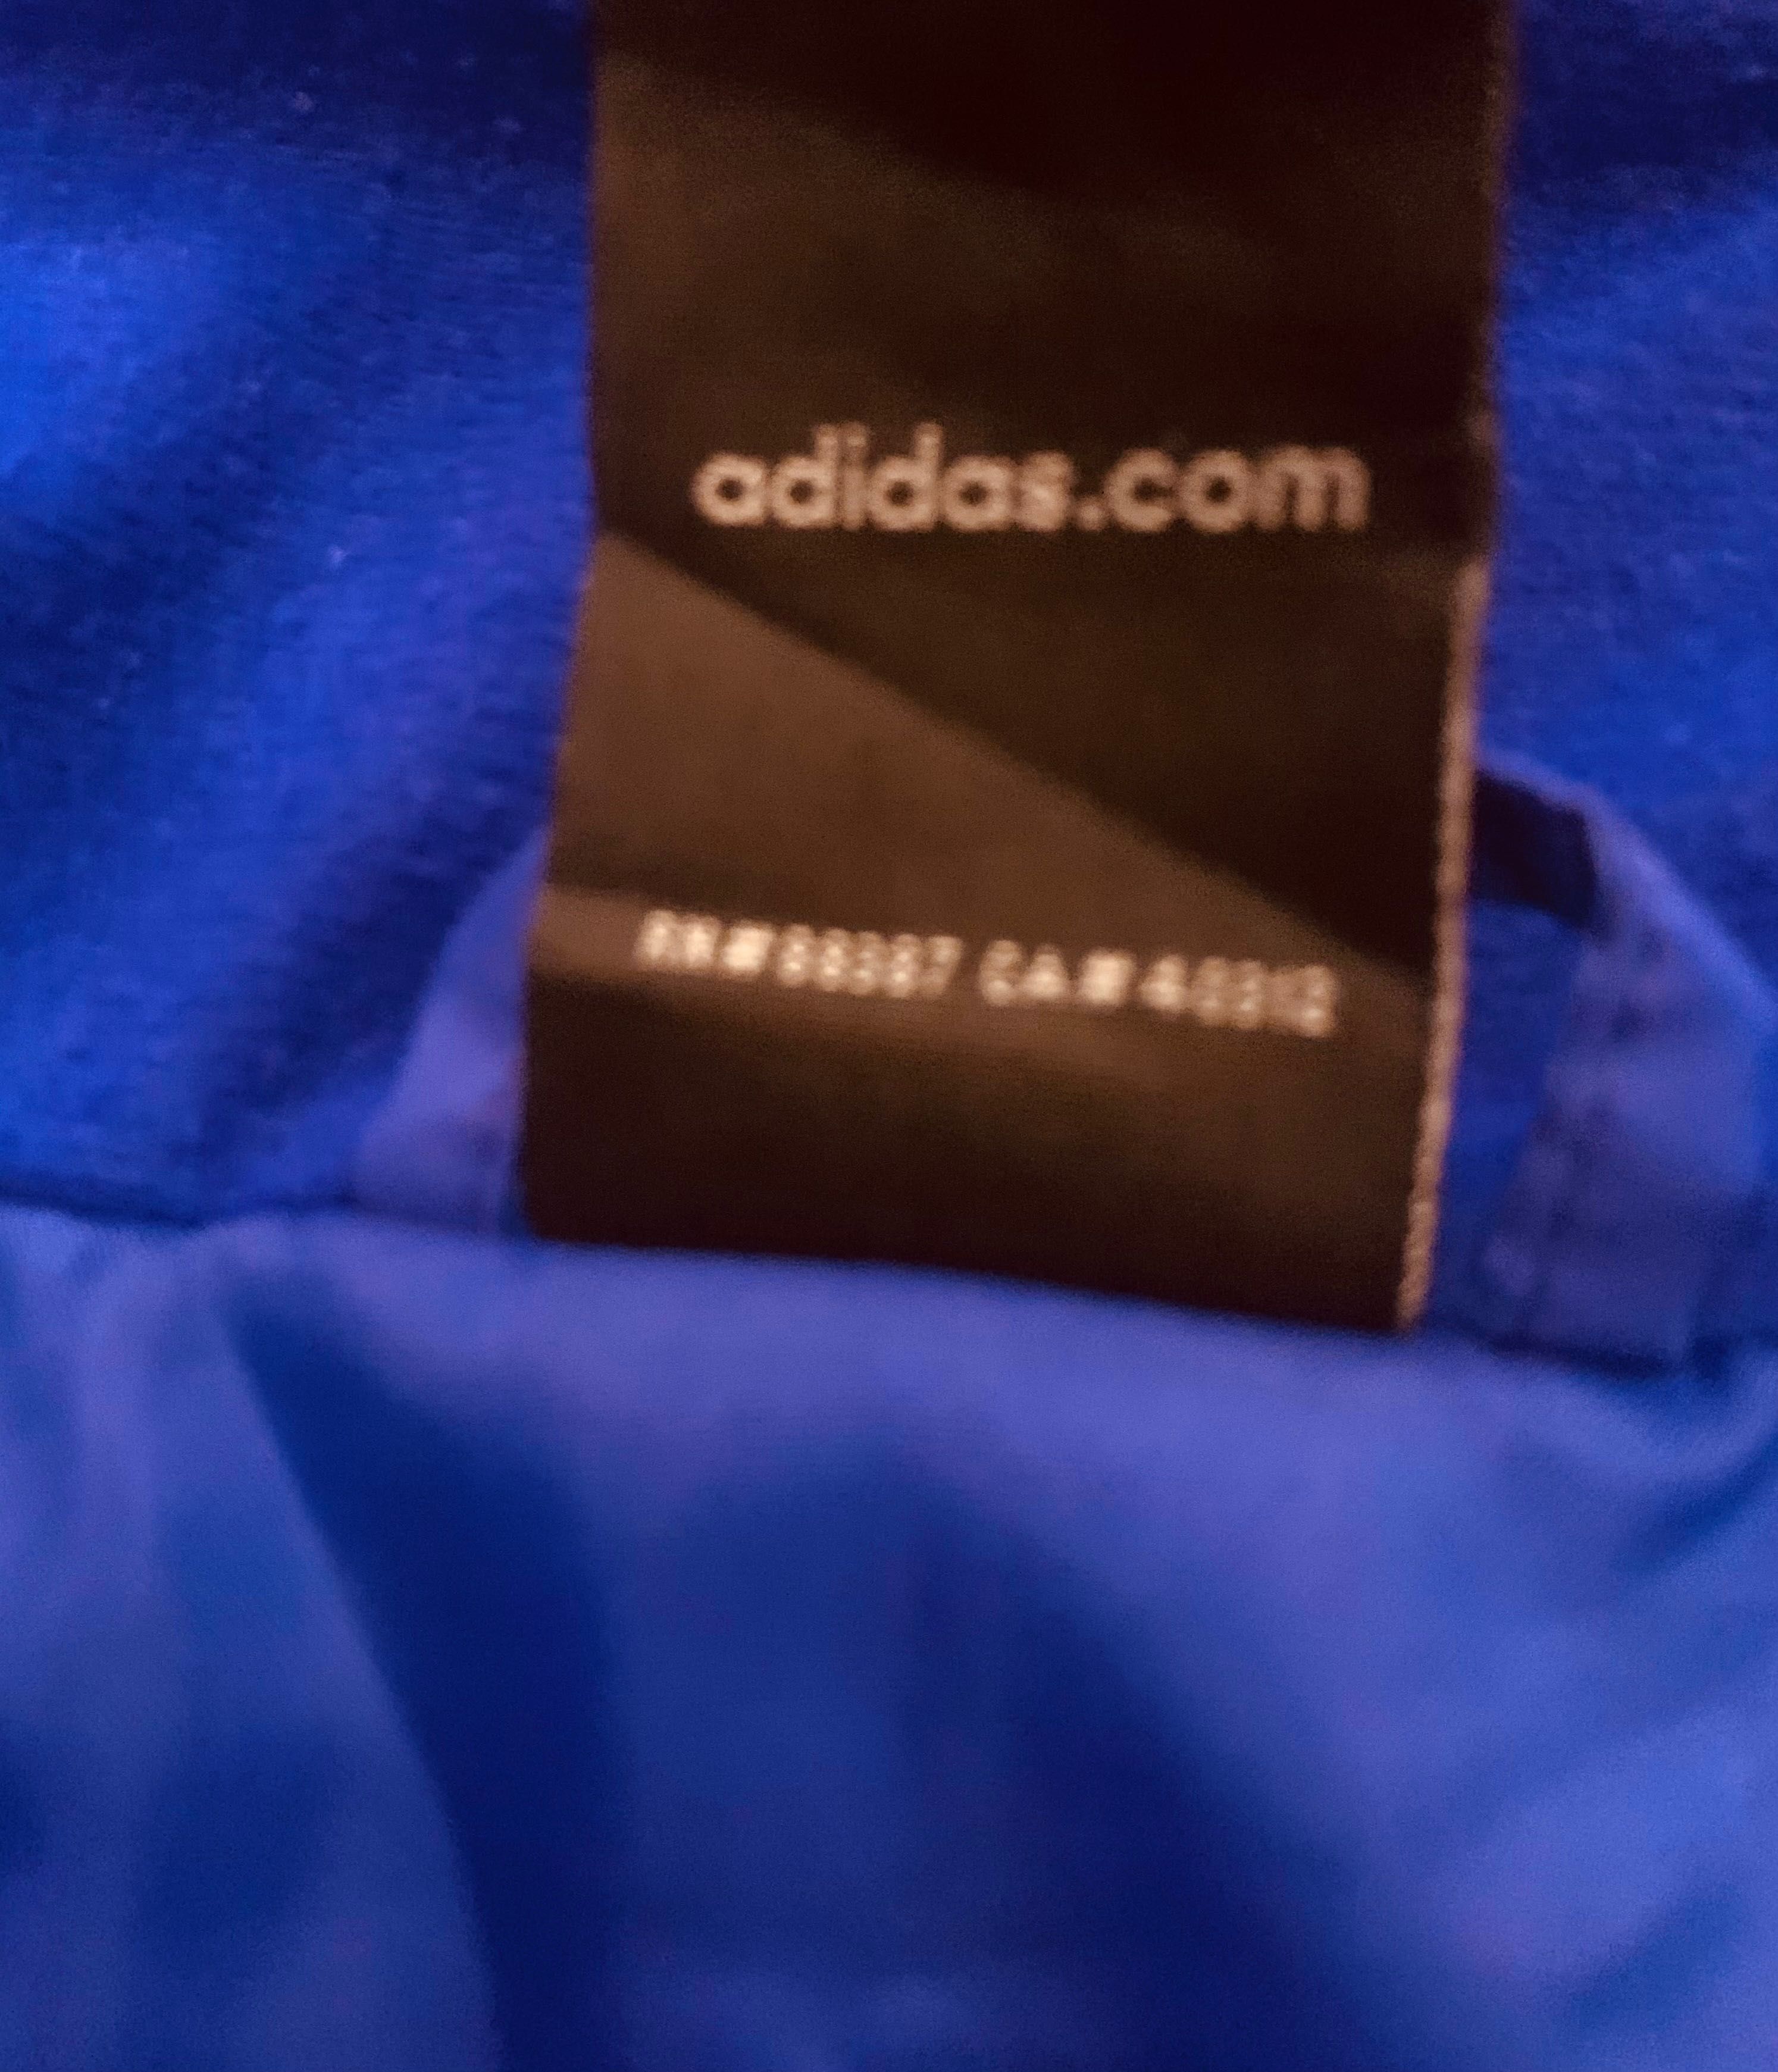 Adidas szafirowa damska sportowa kurtka przejściowa, jak nowa S/M